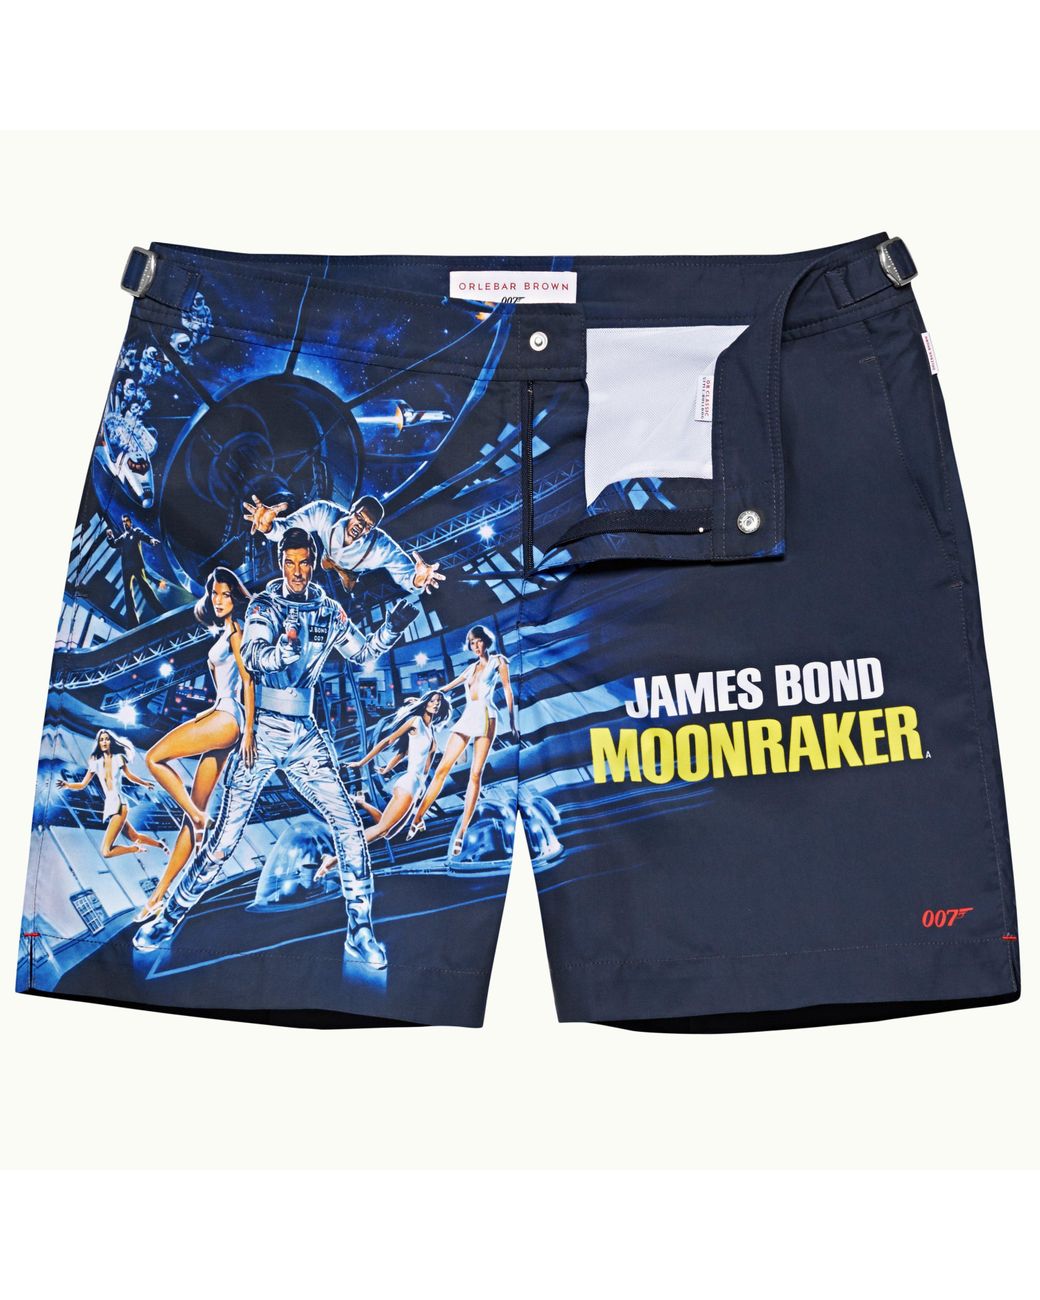 Orlebar Brown Bulldog 007 Moonraker Mid Length Swim Shorts in Blue for ...